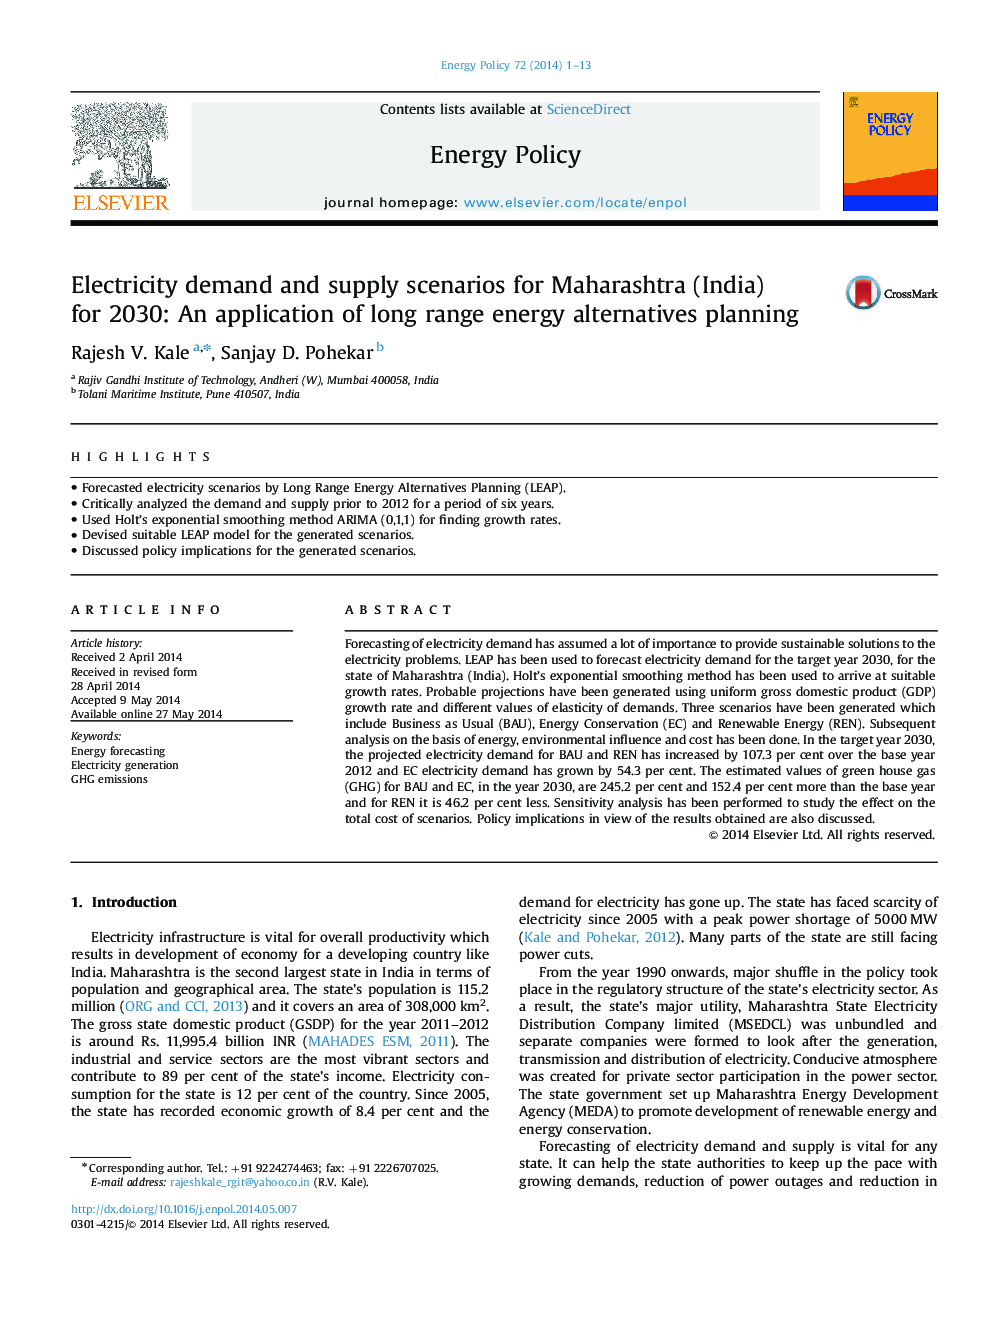 سناریوهای تقاضای برق و عرضه برای ماهاراشترا (هند) تا سال 2030: استفاده از برنامه های جایگزین انرژی طولانی مدت 